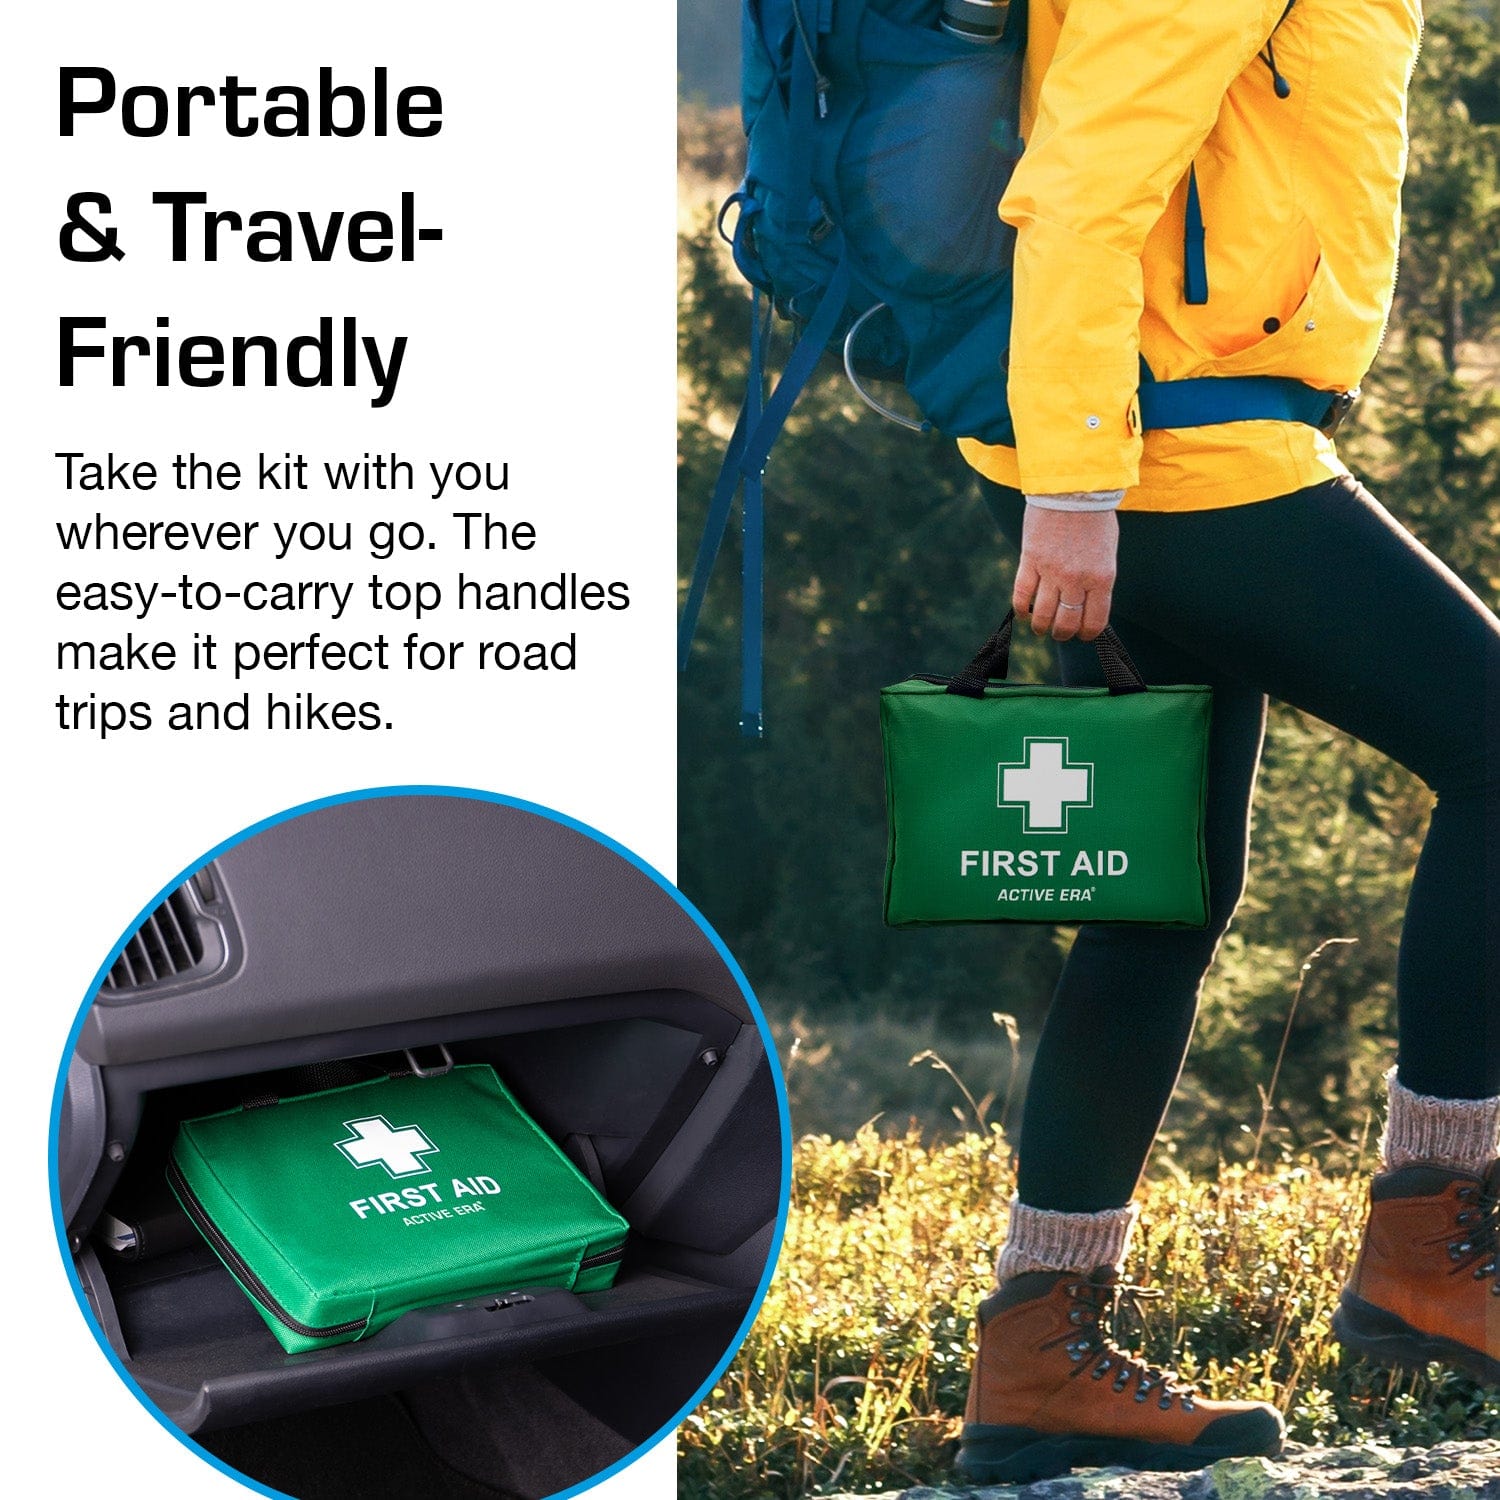 90-teilige Premium-Erste-Hilfe-Set-Tasche – Grün, Kostenlose Lieferung